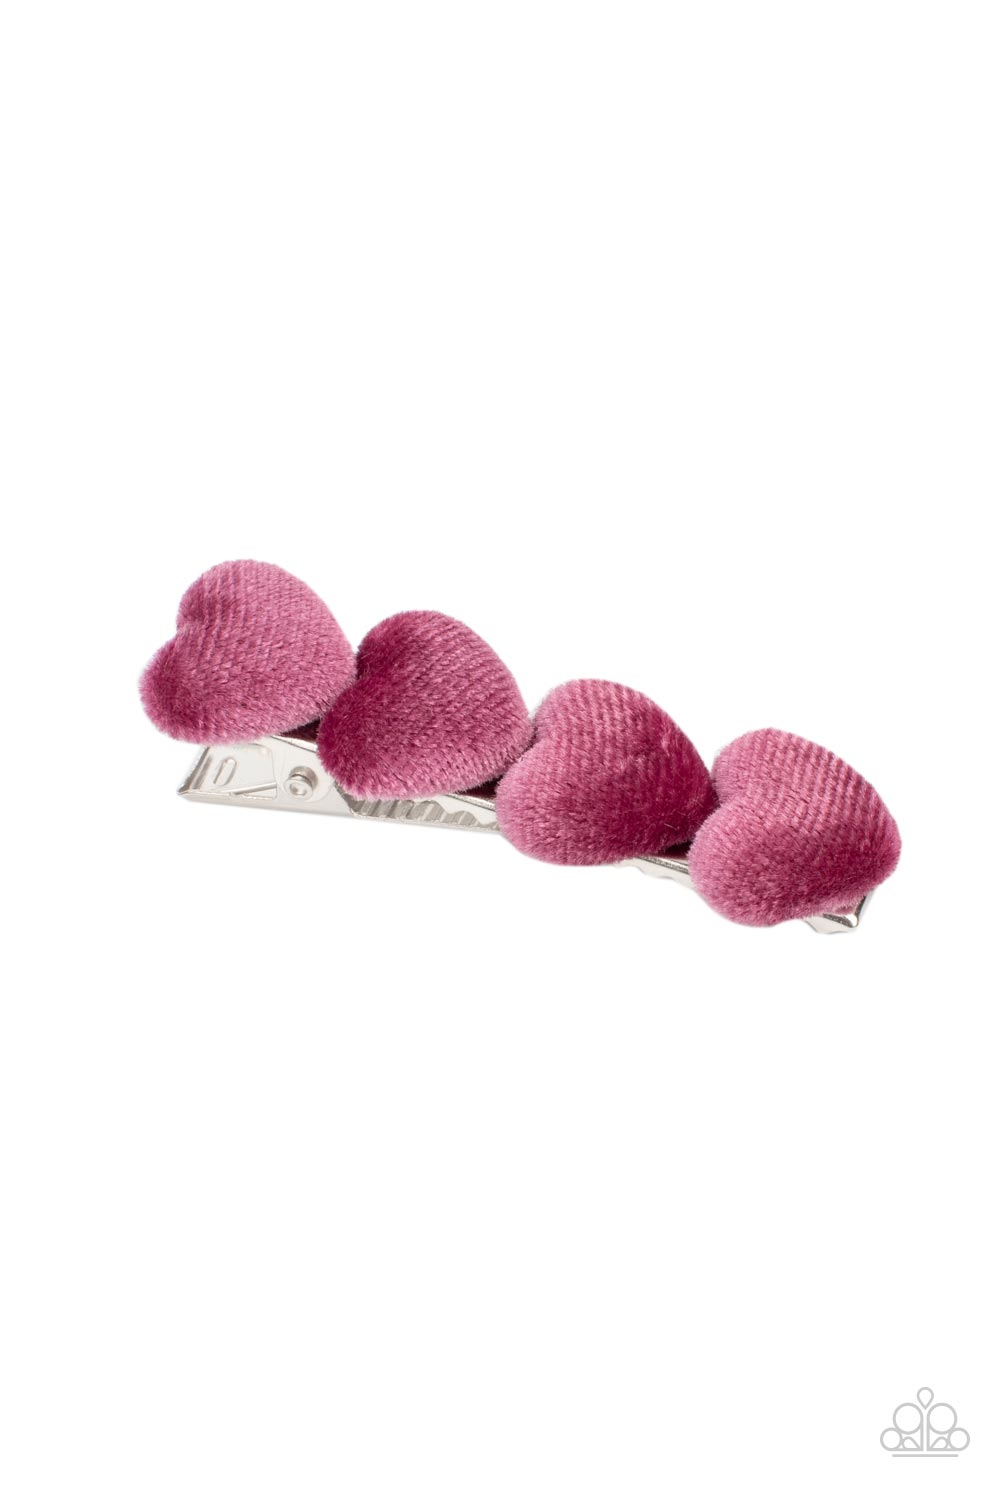 HairClip - Velvet Valentine - Pink